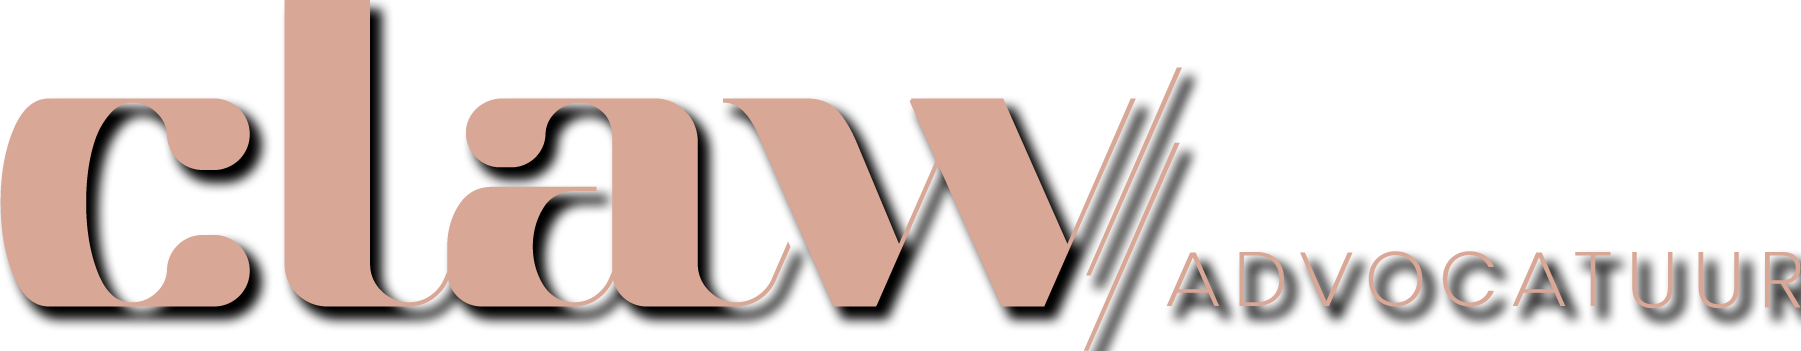 CLAW logo